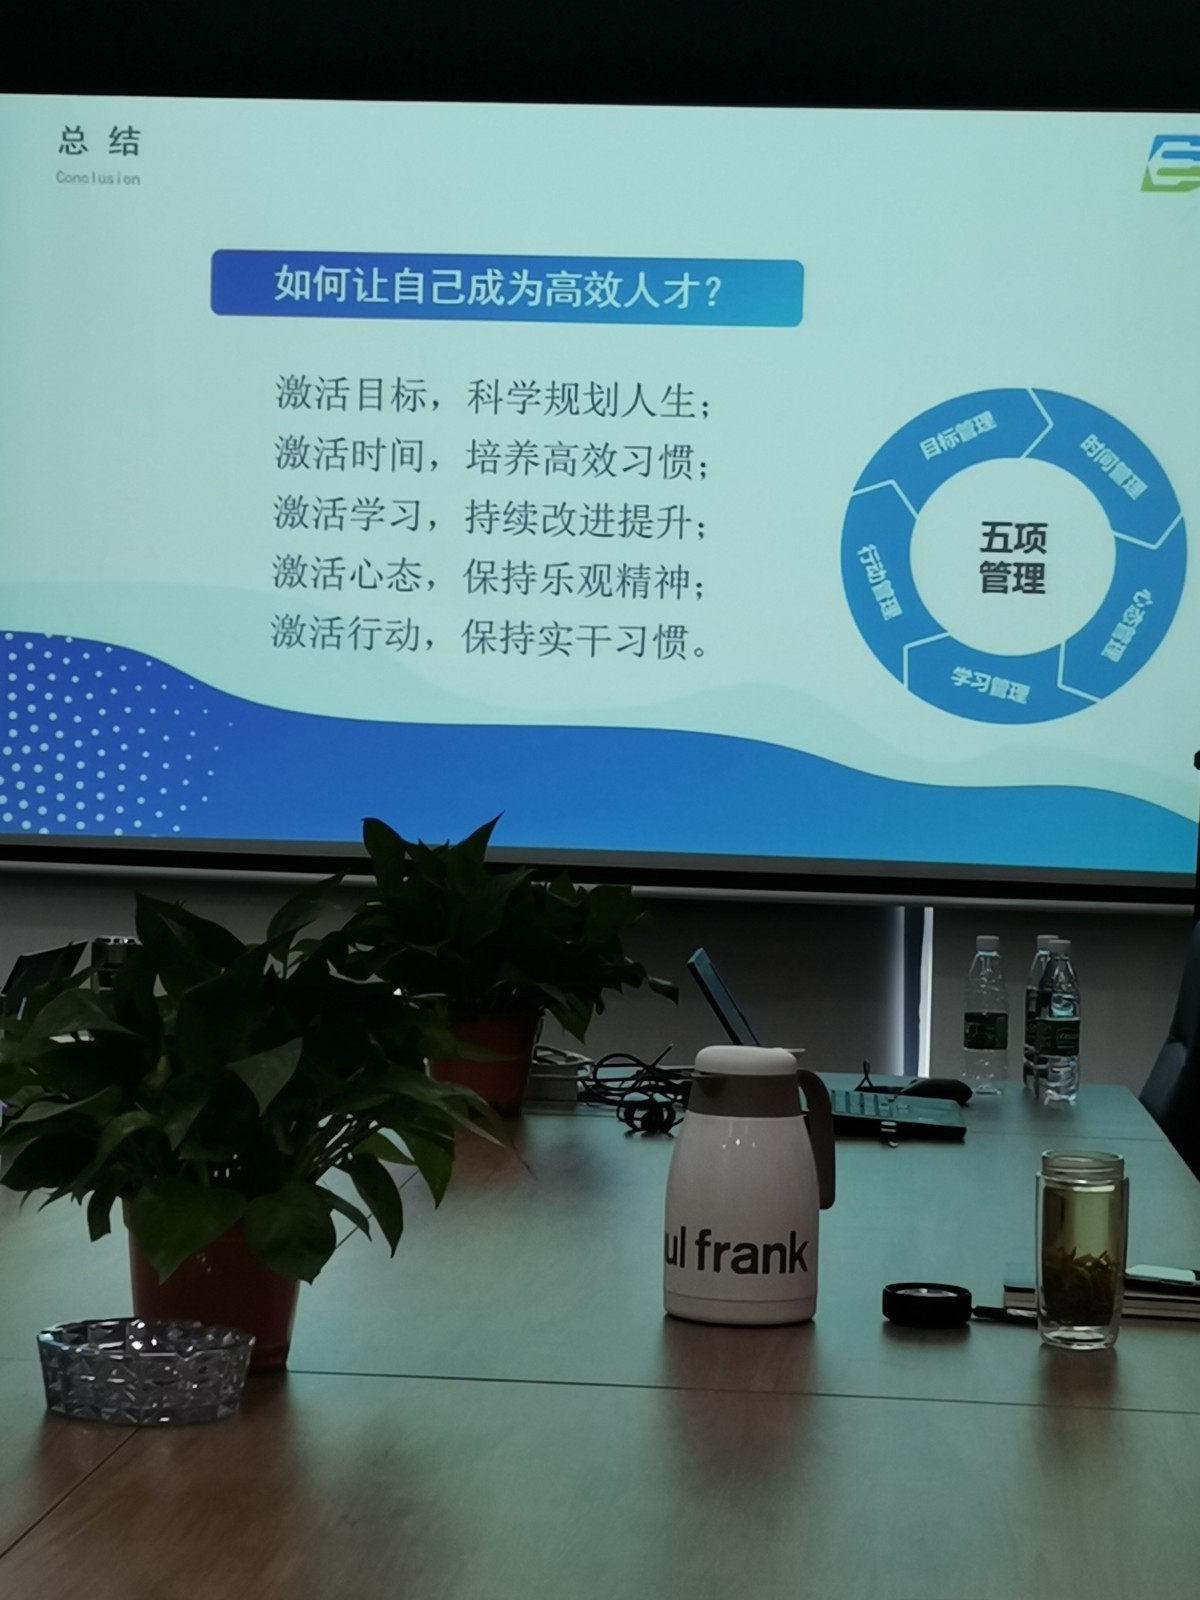 安徽东晟环保集团管理层“组织效率”培训